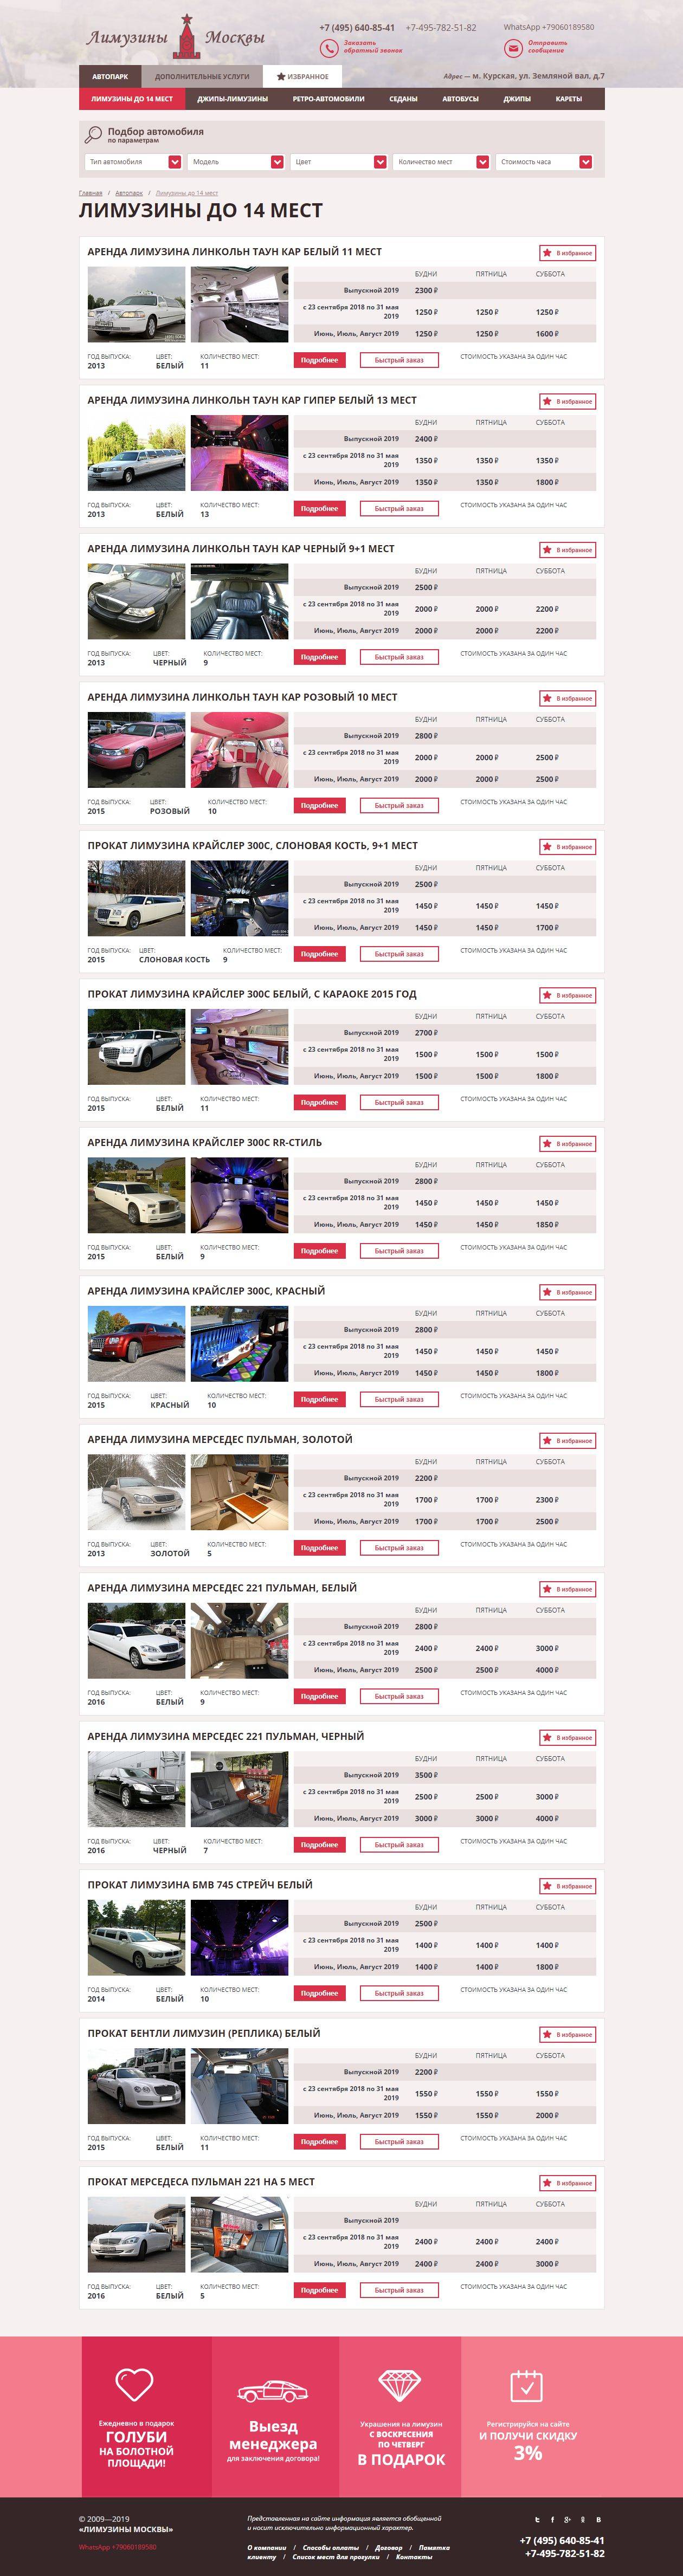 Разработка страницы сайта-визитки по прокату авто